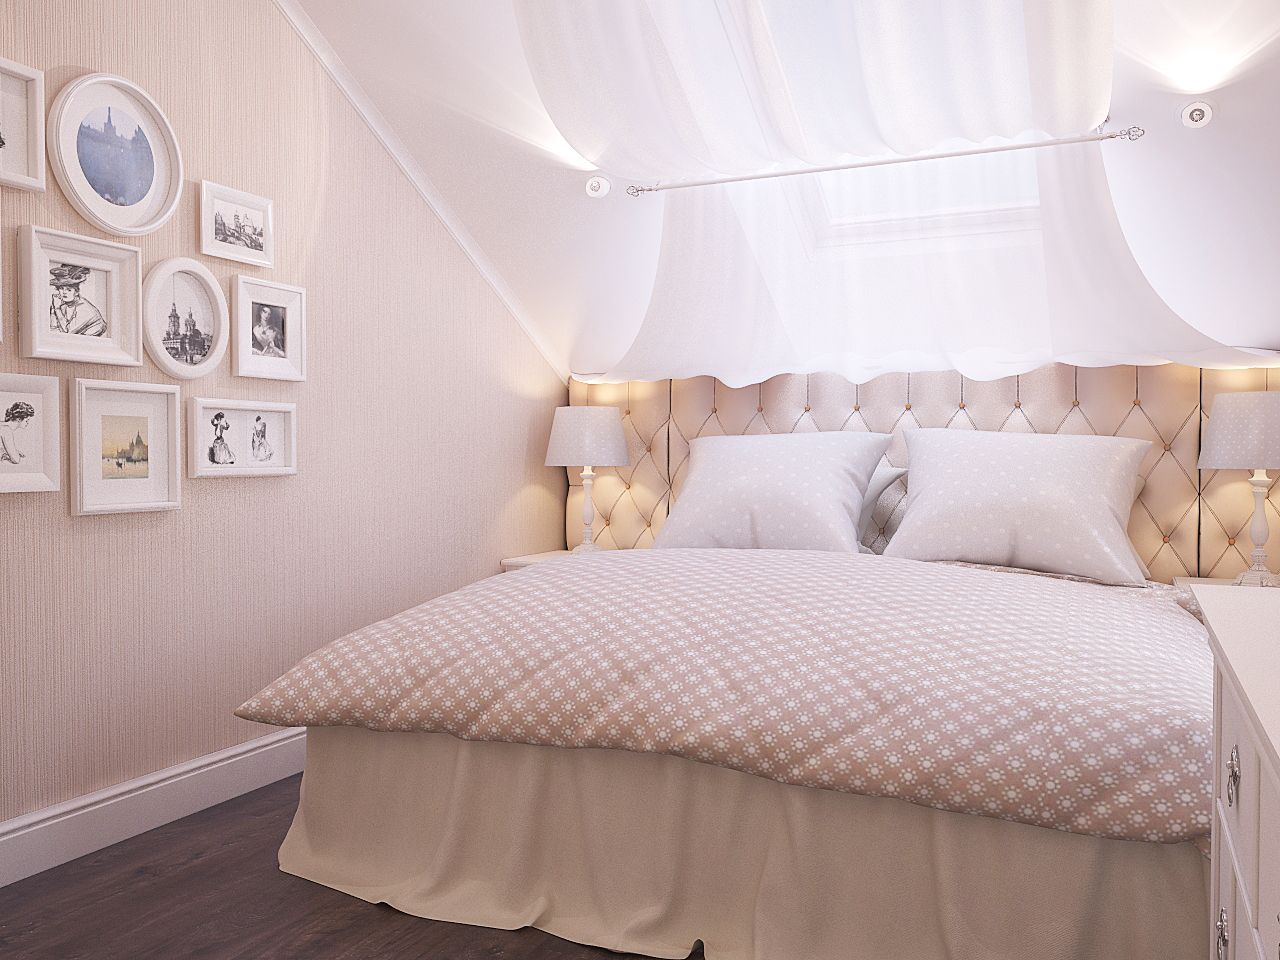 Дизайн интерьера уютной спальни Киев в прованс, легкая класика, с балдахином, розовые цвета ЖК Комфорт таун, Альтер Эго